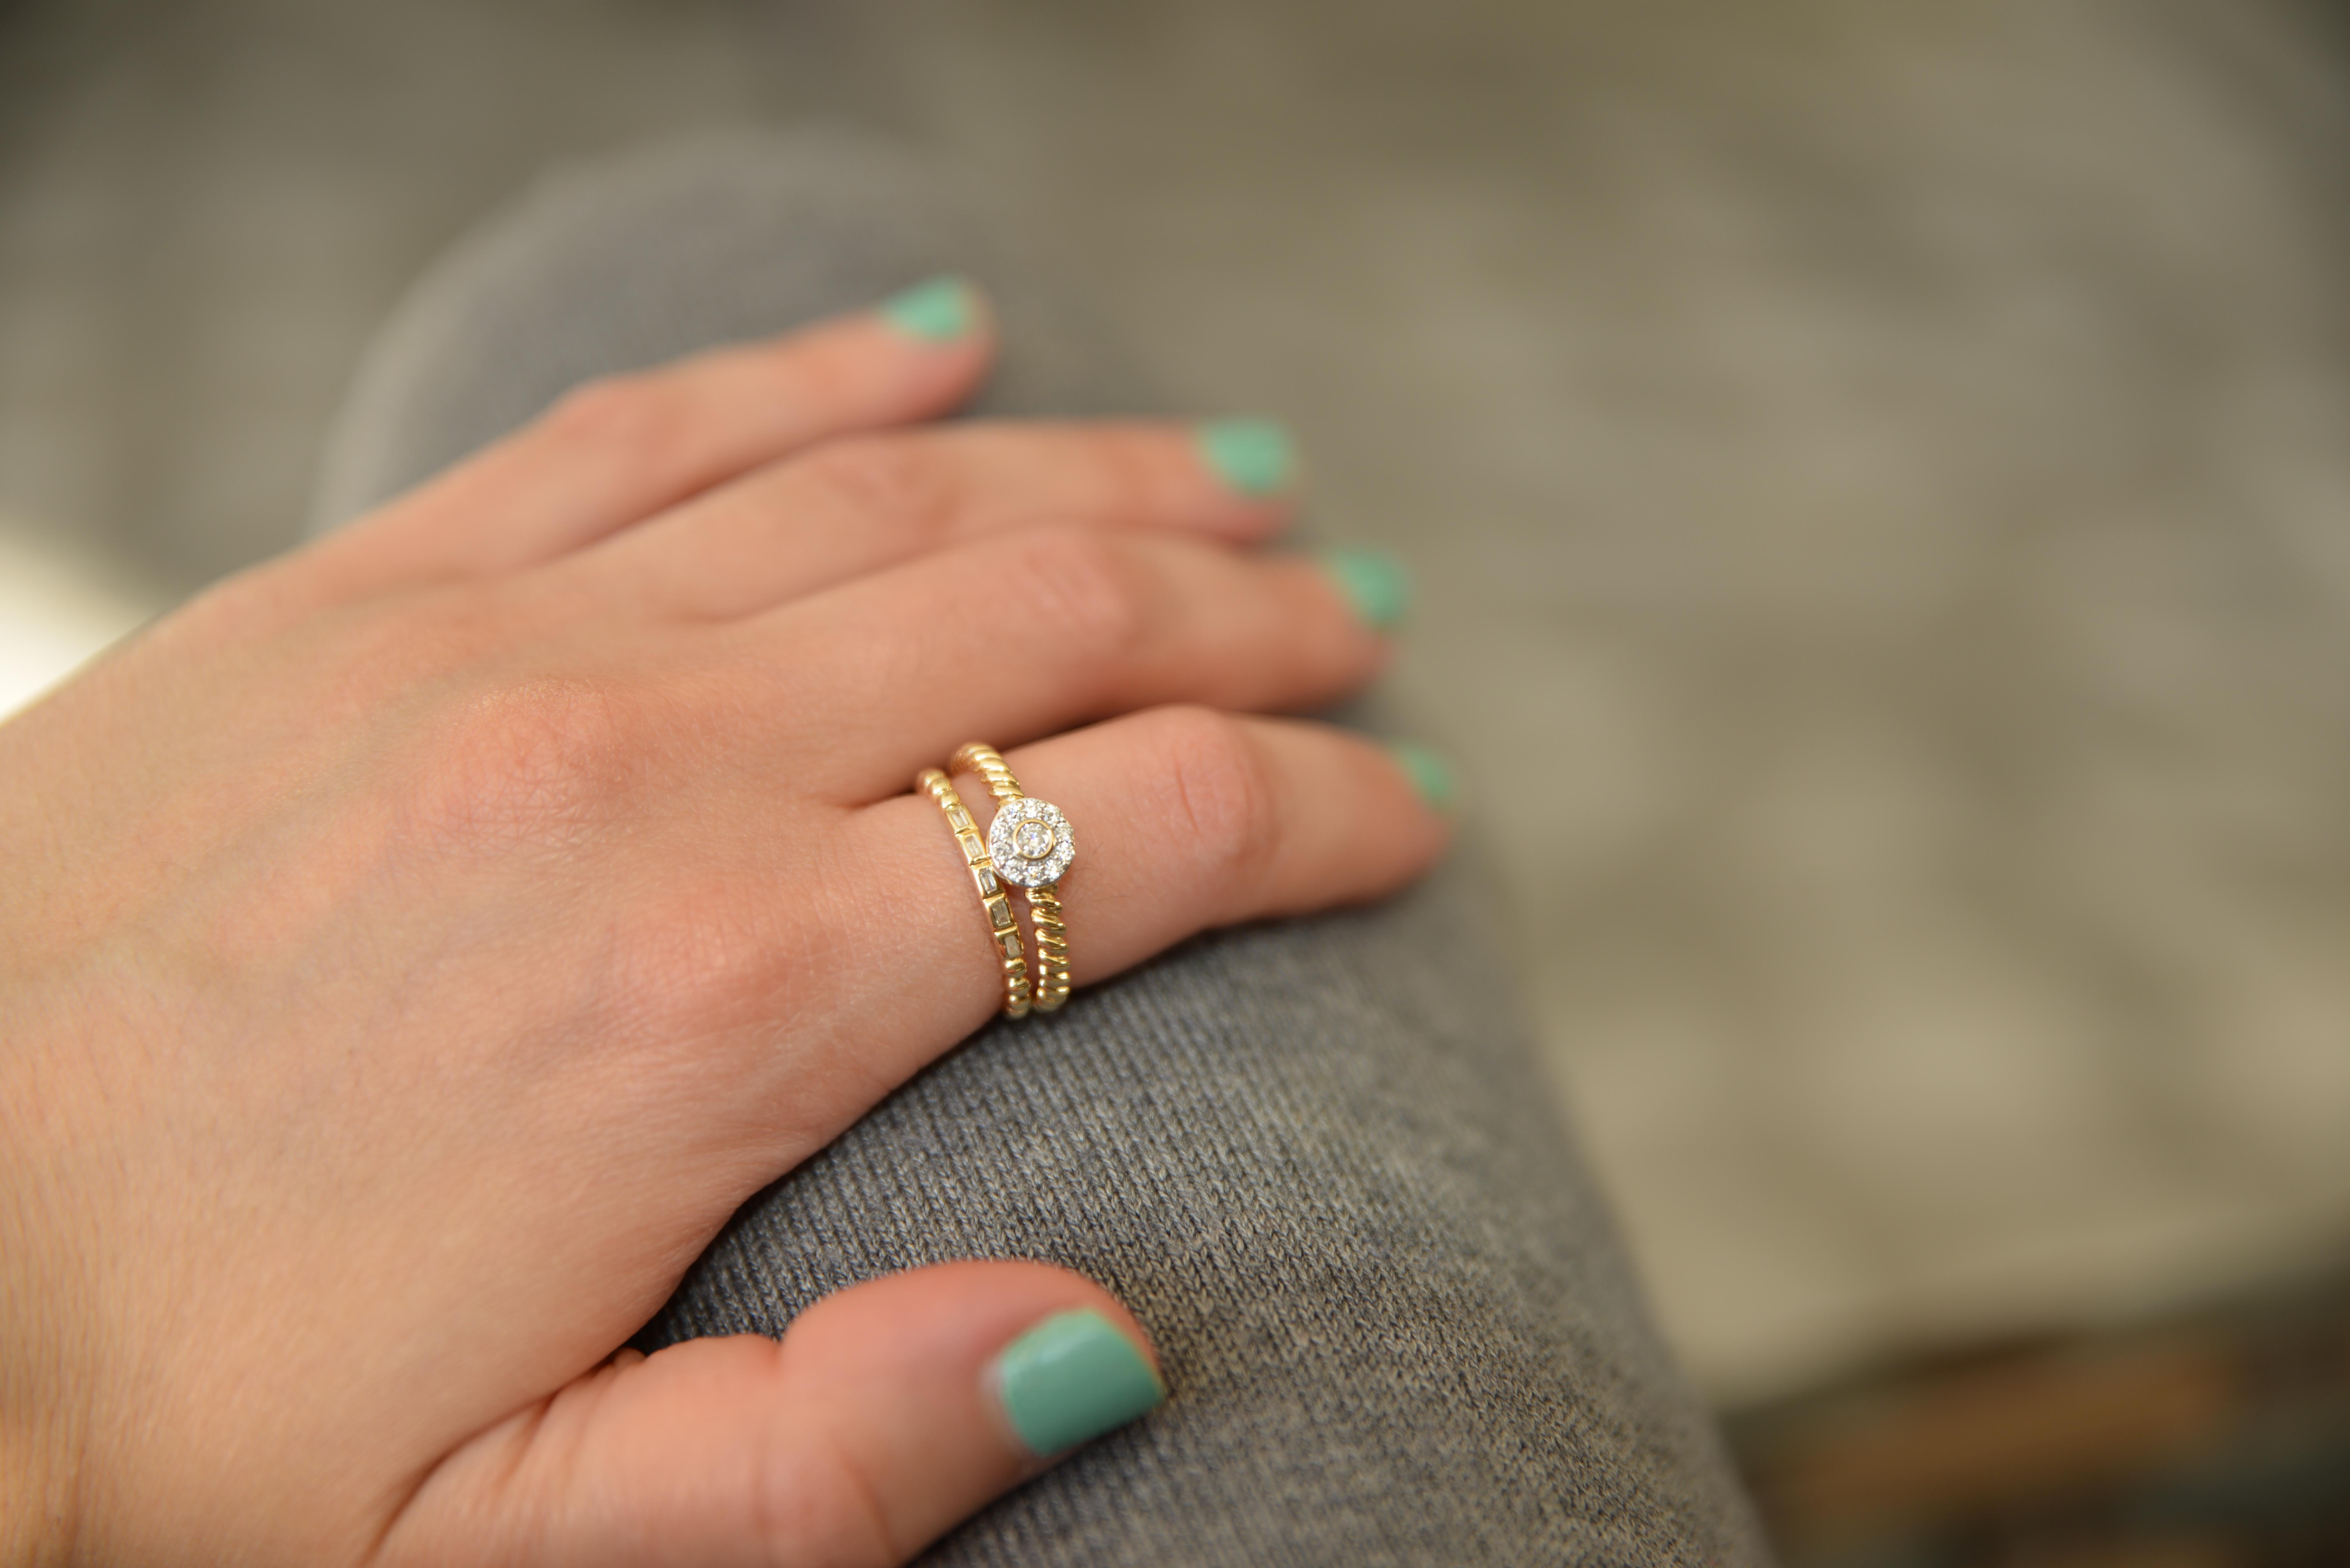 Entdecken Sie die stilvollen Designs unseres Modeschmucks mit diesem Diamantring mit Heiligenschein, der auf dem klassischen Design einer Seilkette basiert. Tragen Sie ihn als modischen Ring, als stapelbaren Ring oder als einzigartigen Ehering.

14